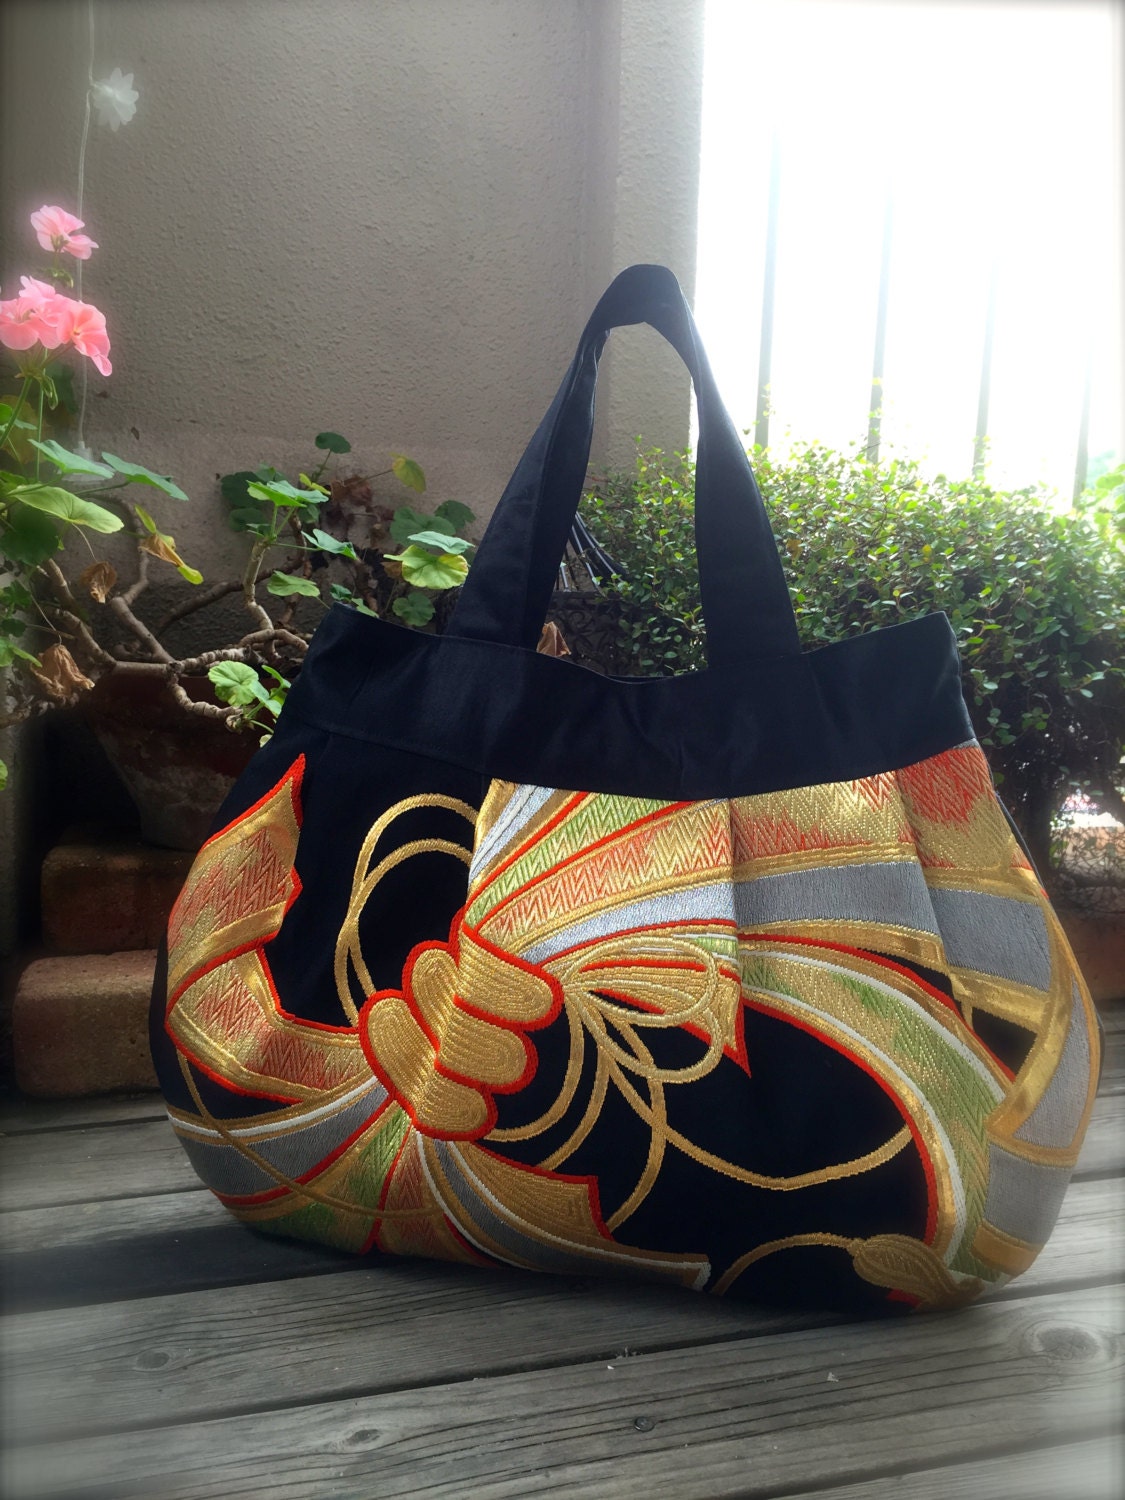 OBi / Kimono / Bag / BK786 Gorgeous Pattern Pleated Tote Bag